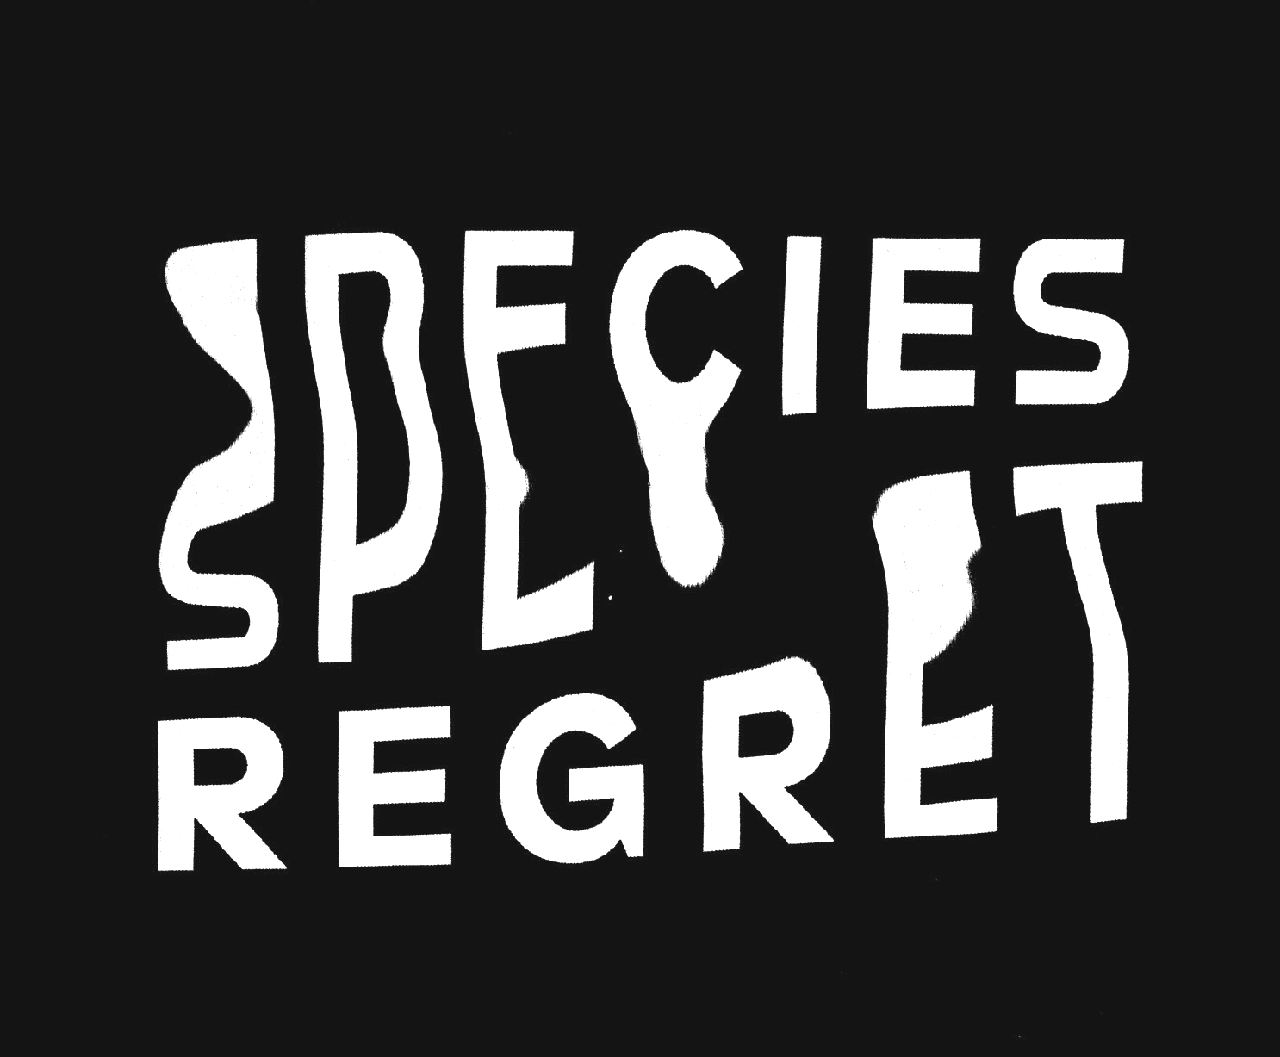 Species Regret by Ian Lynam